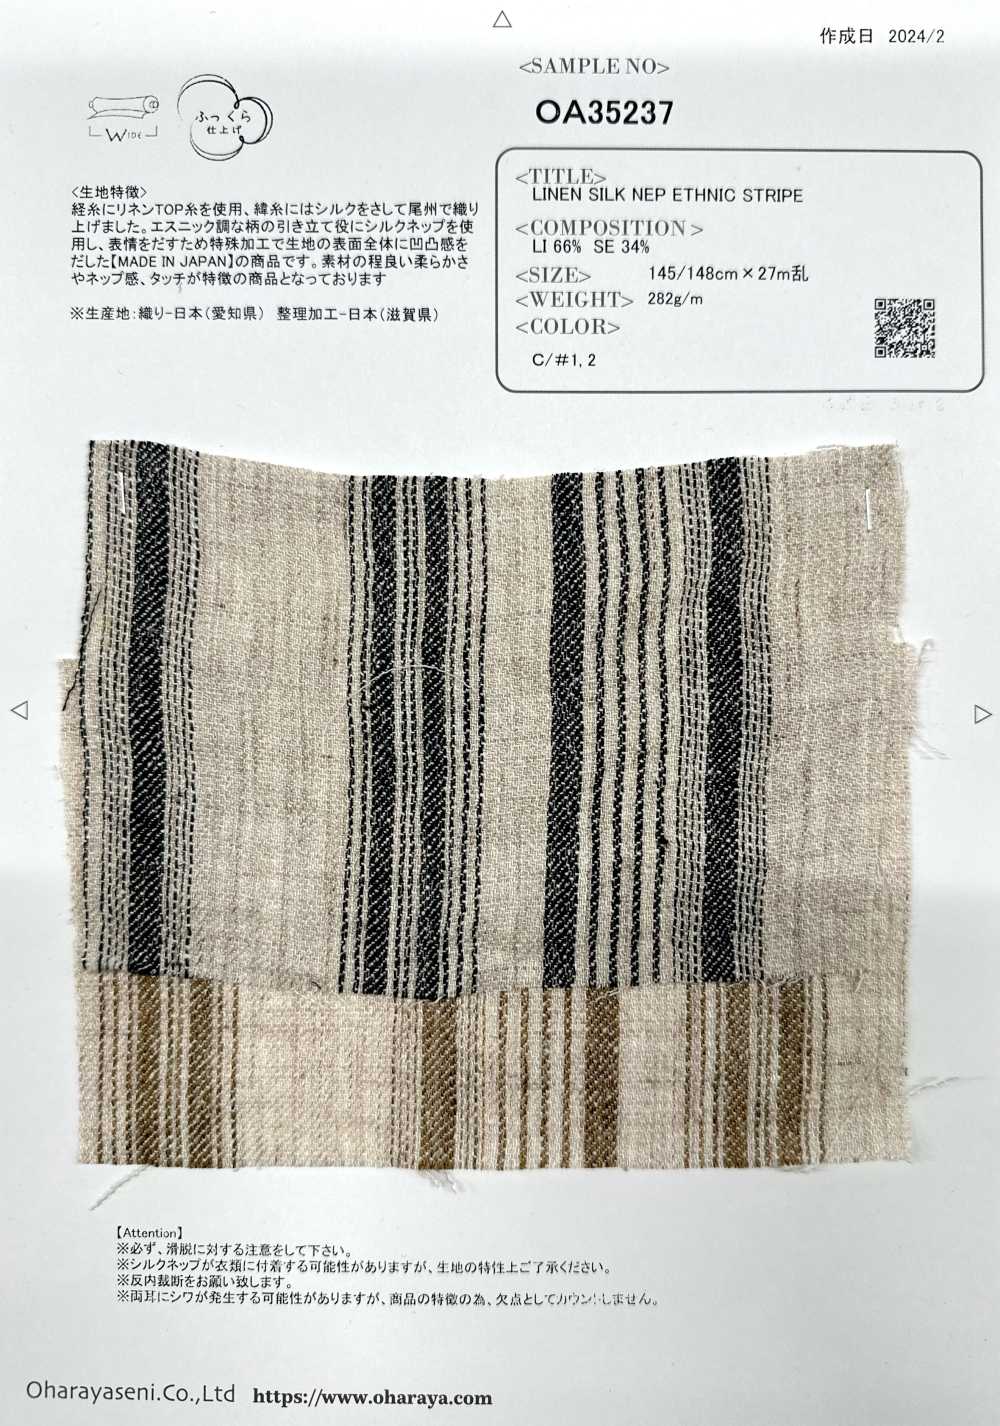 OA35237 Supima Cotton & Linen Pháp × SILK 2/1 Vải Chéo Siêu Mềm Mượt Oharayaseni